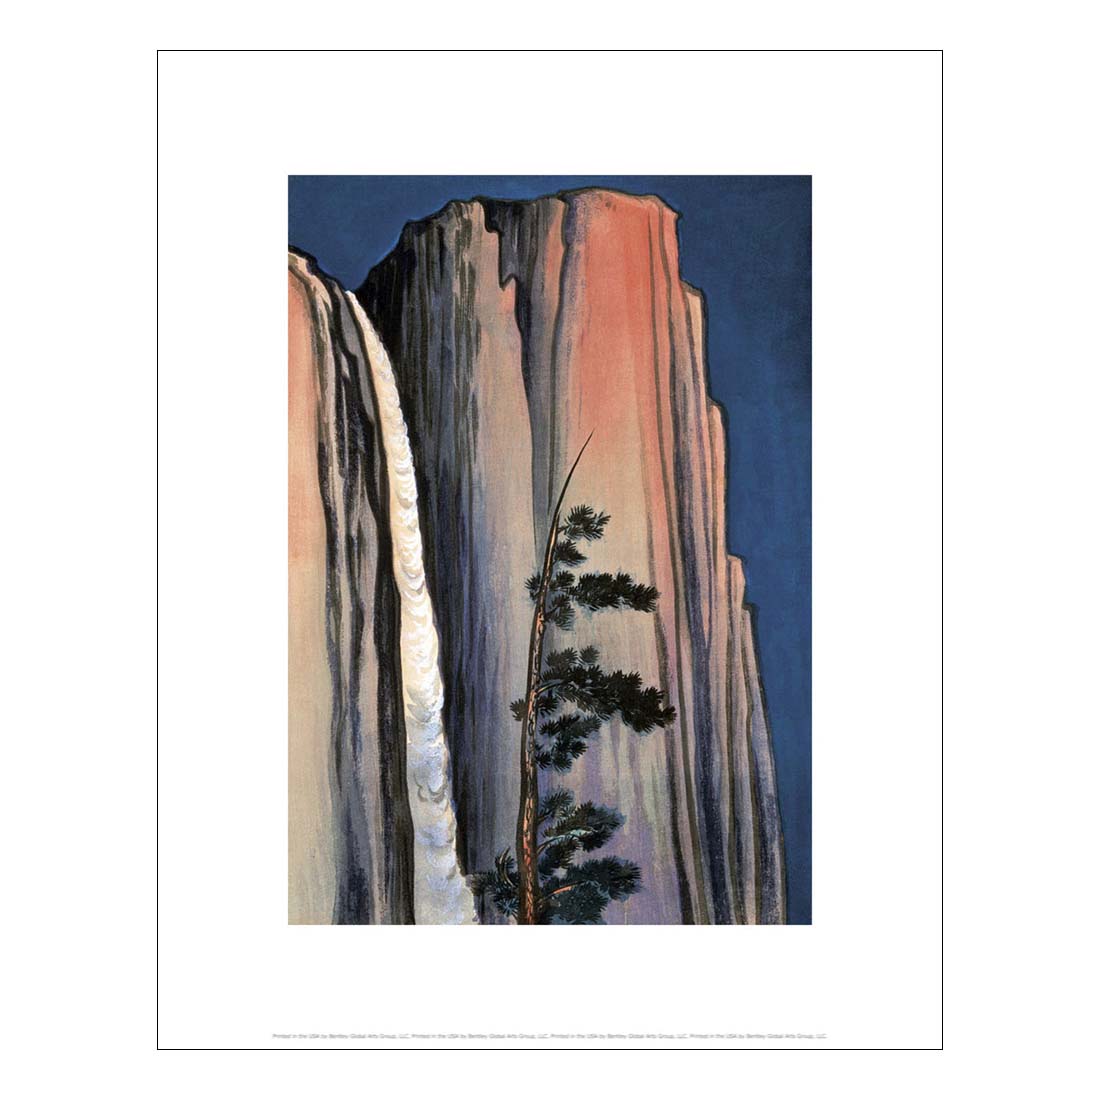 Obata Evening Glow at Yosemite Waterfall Print